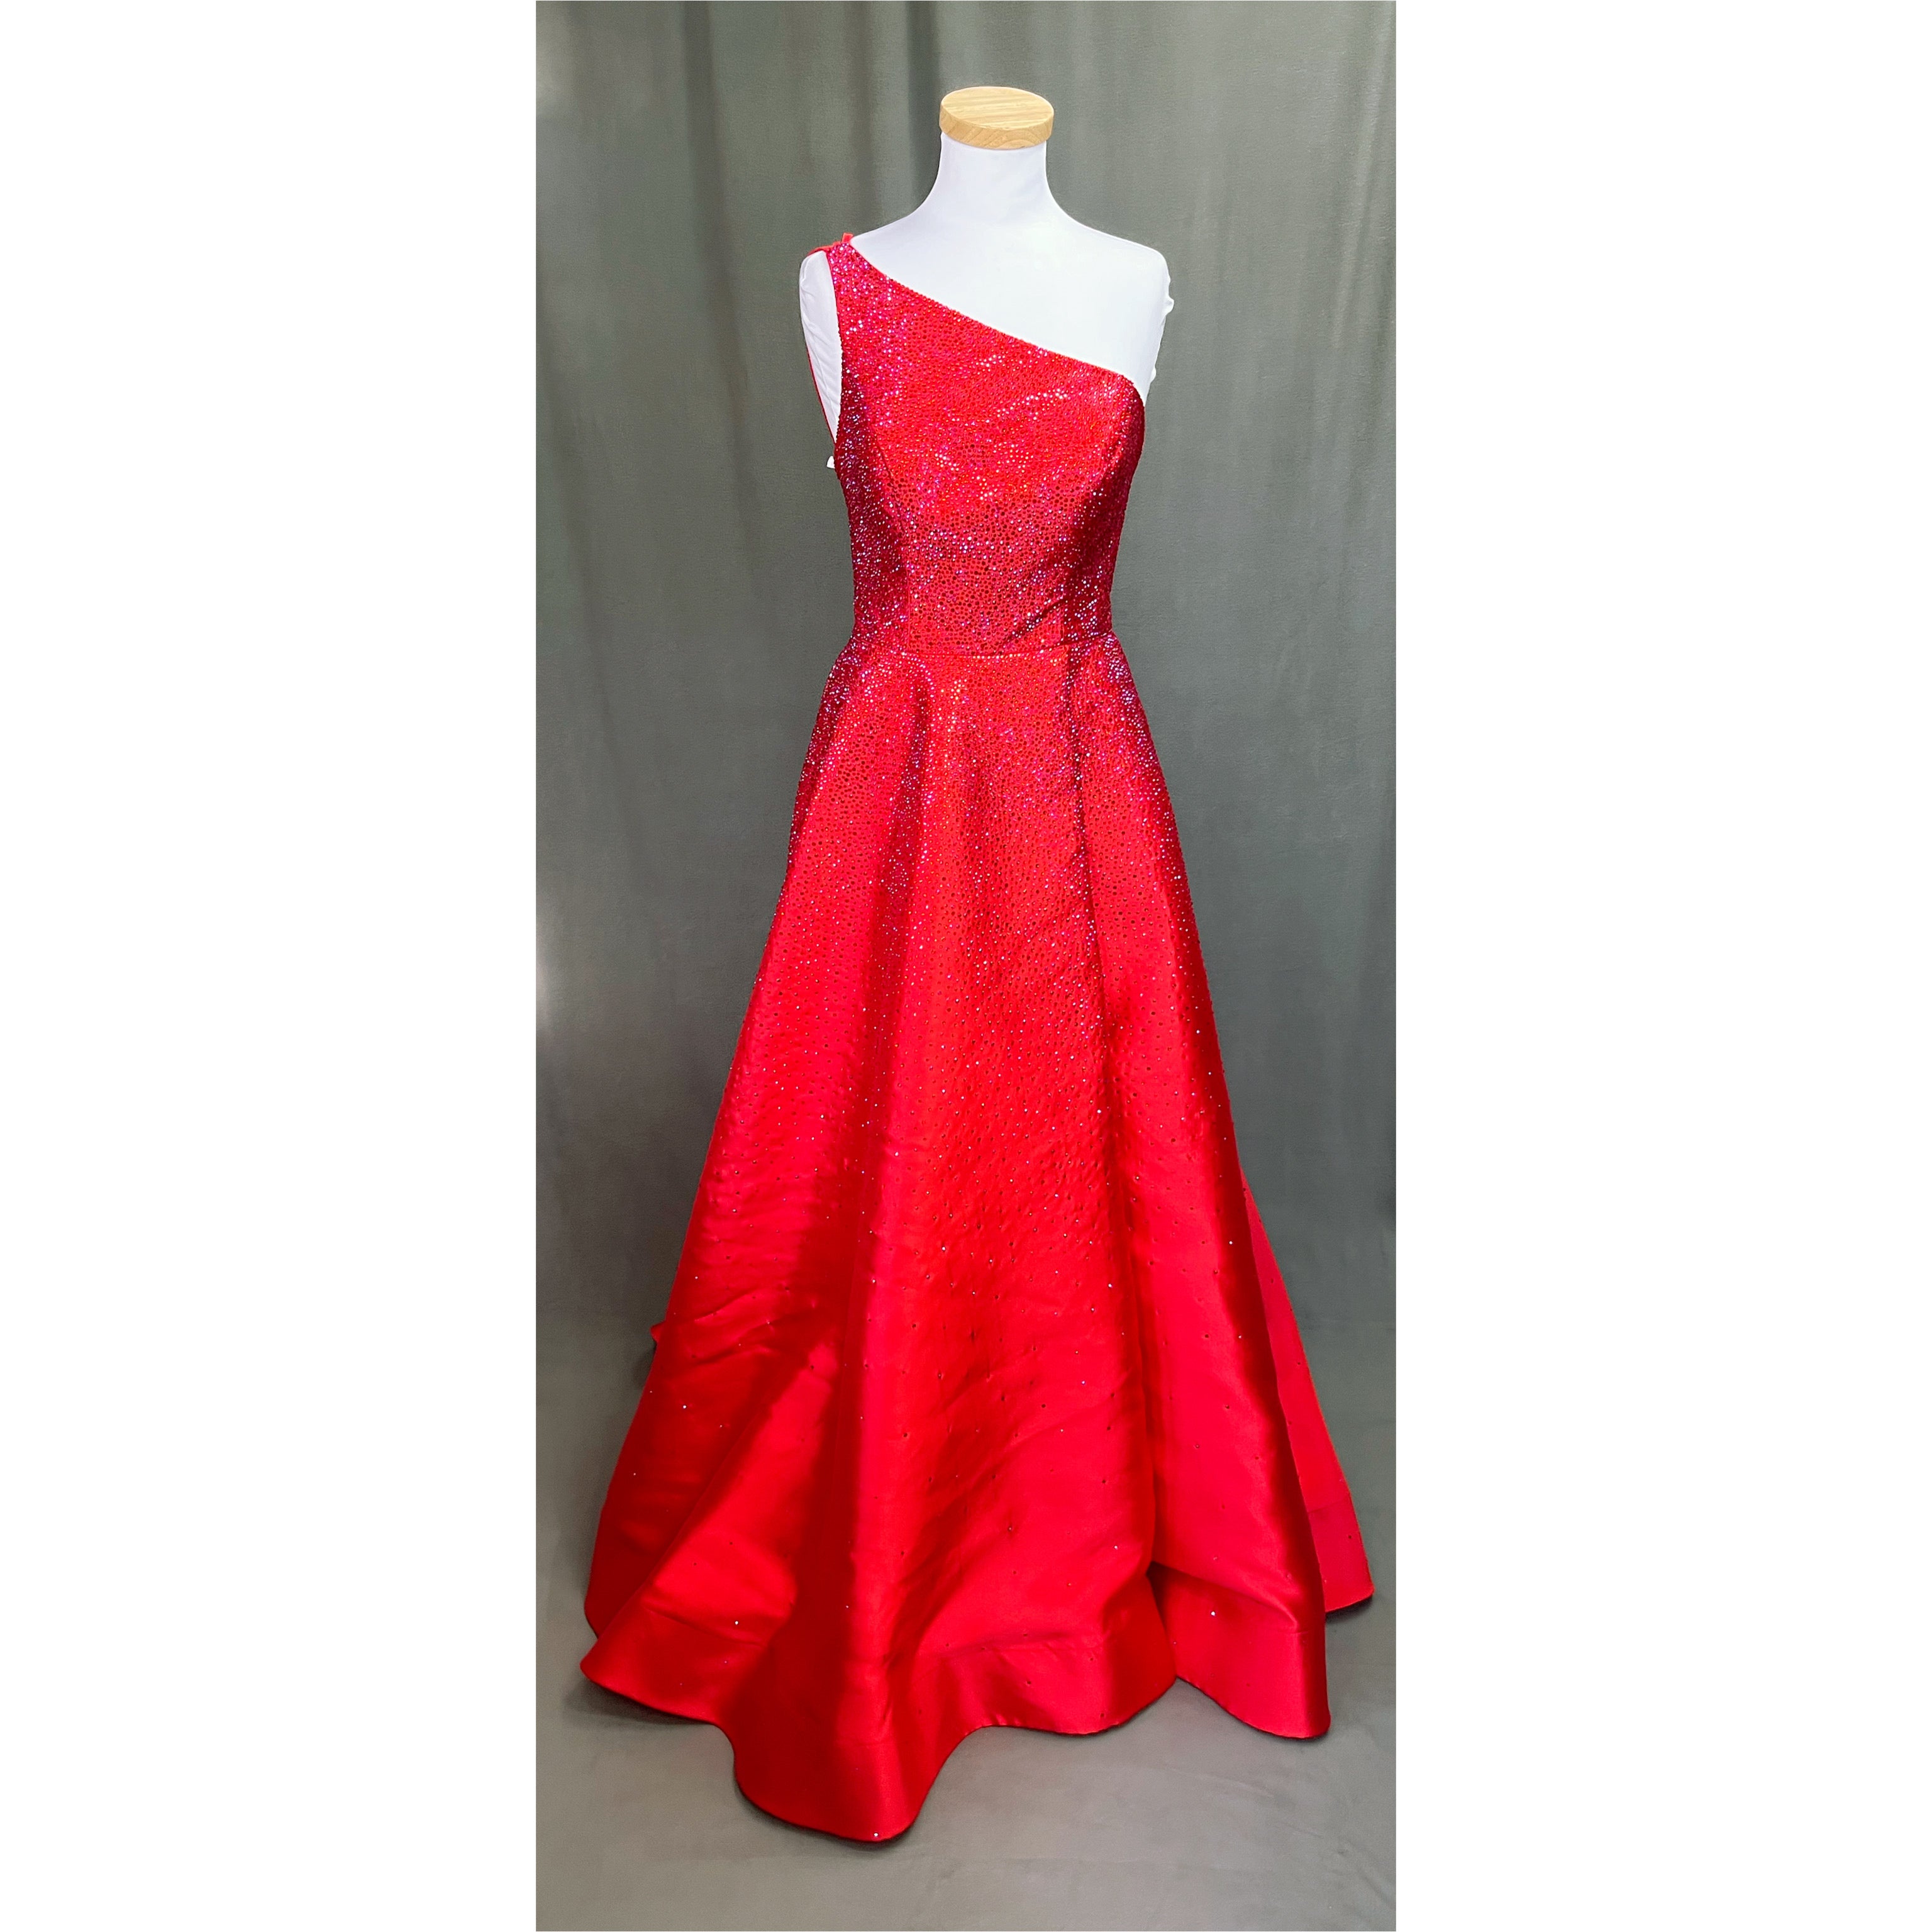 Sherri Hill red dress, size 8